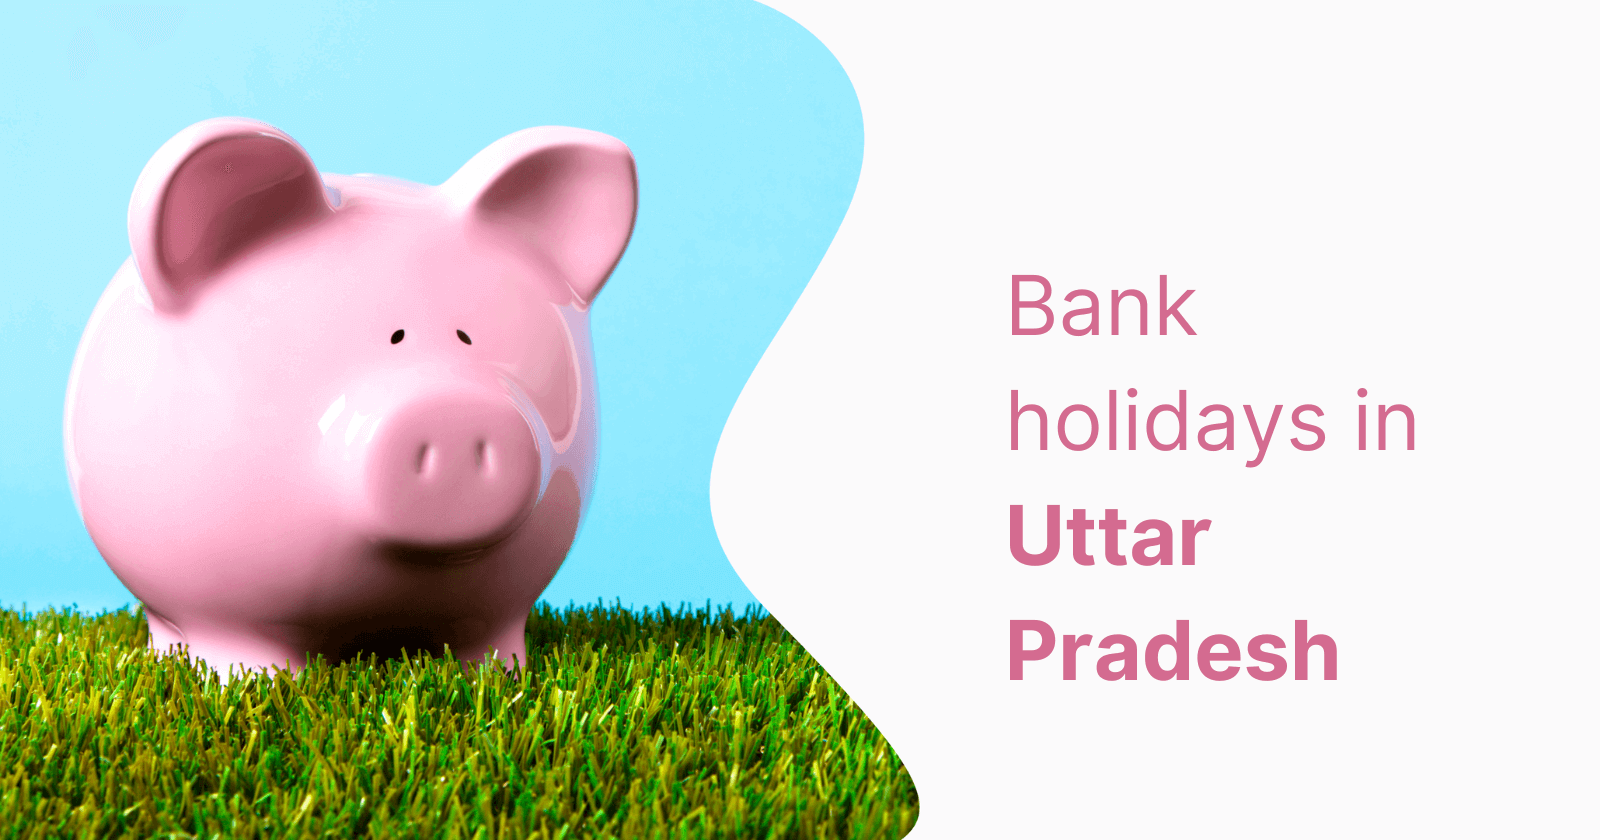 Uttar Pradesh Holidays: List of Bank Holidays in Uttar Pradesh in 2023